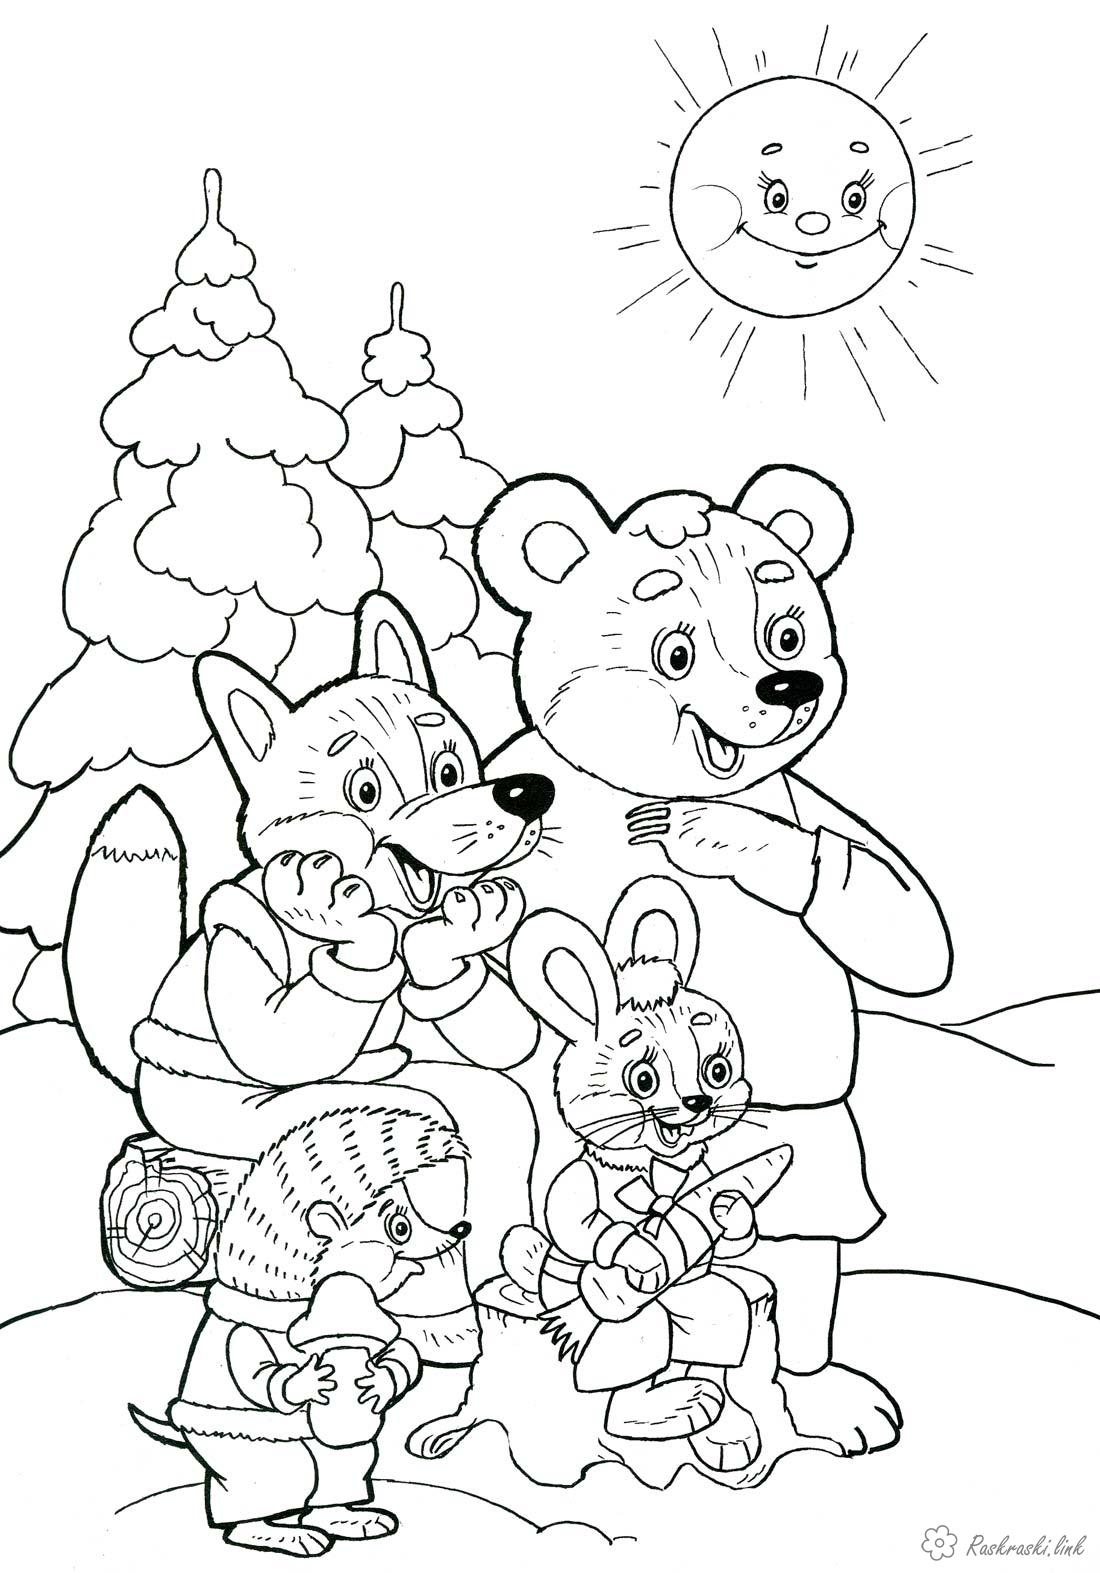 Раскраски Новый год Детская новогодняя раскраска, елочки, медведь, лиса, заяц, ежик и яркое солнышко